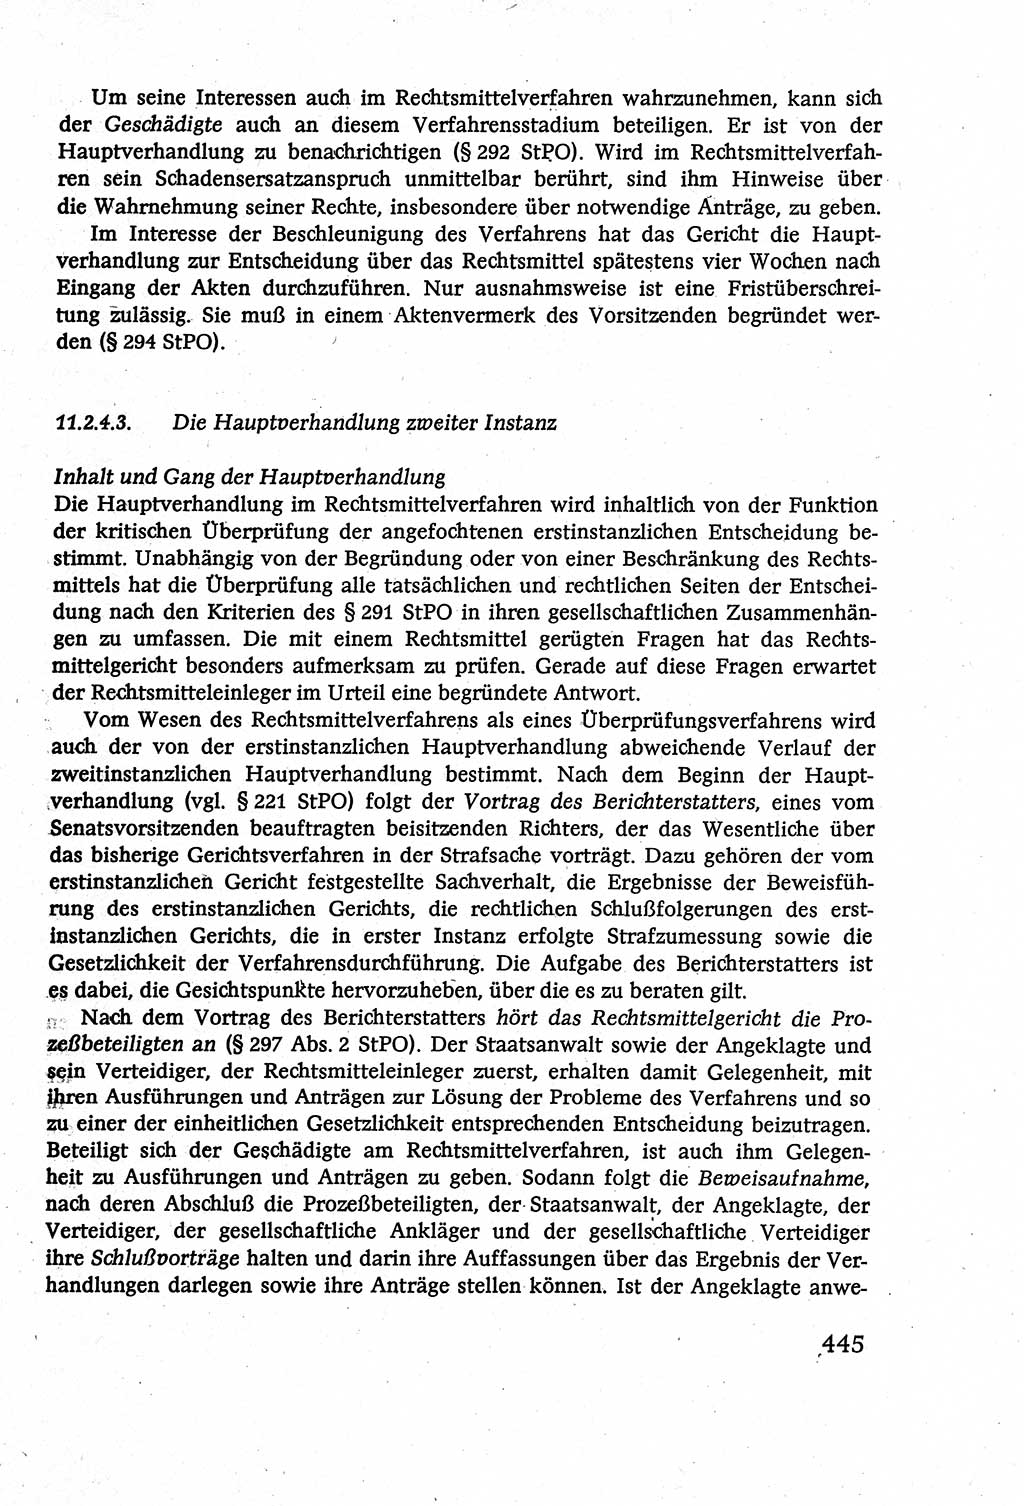 Strafverfahrensrecht [Deutsche Demokratische Republik (DDR)], Lehrbuch 1977, Seite 445 (Strafverf.-R. DDR Lb. 1977, S. 445)